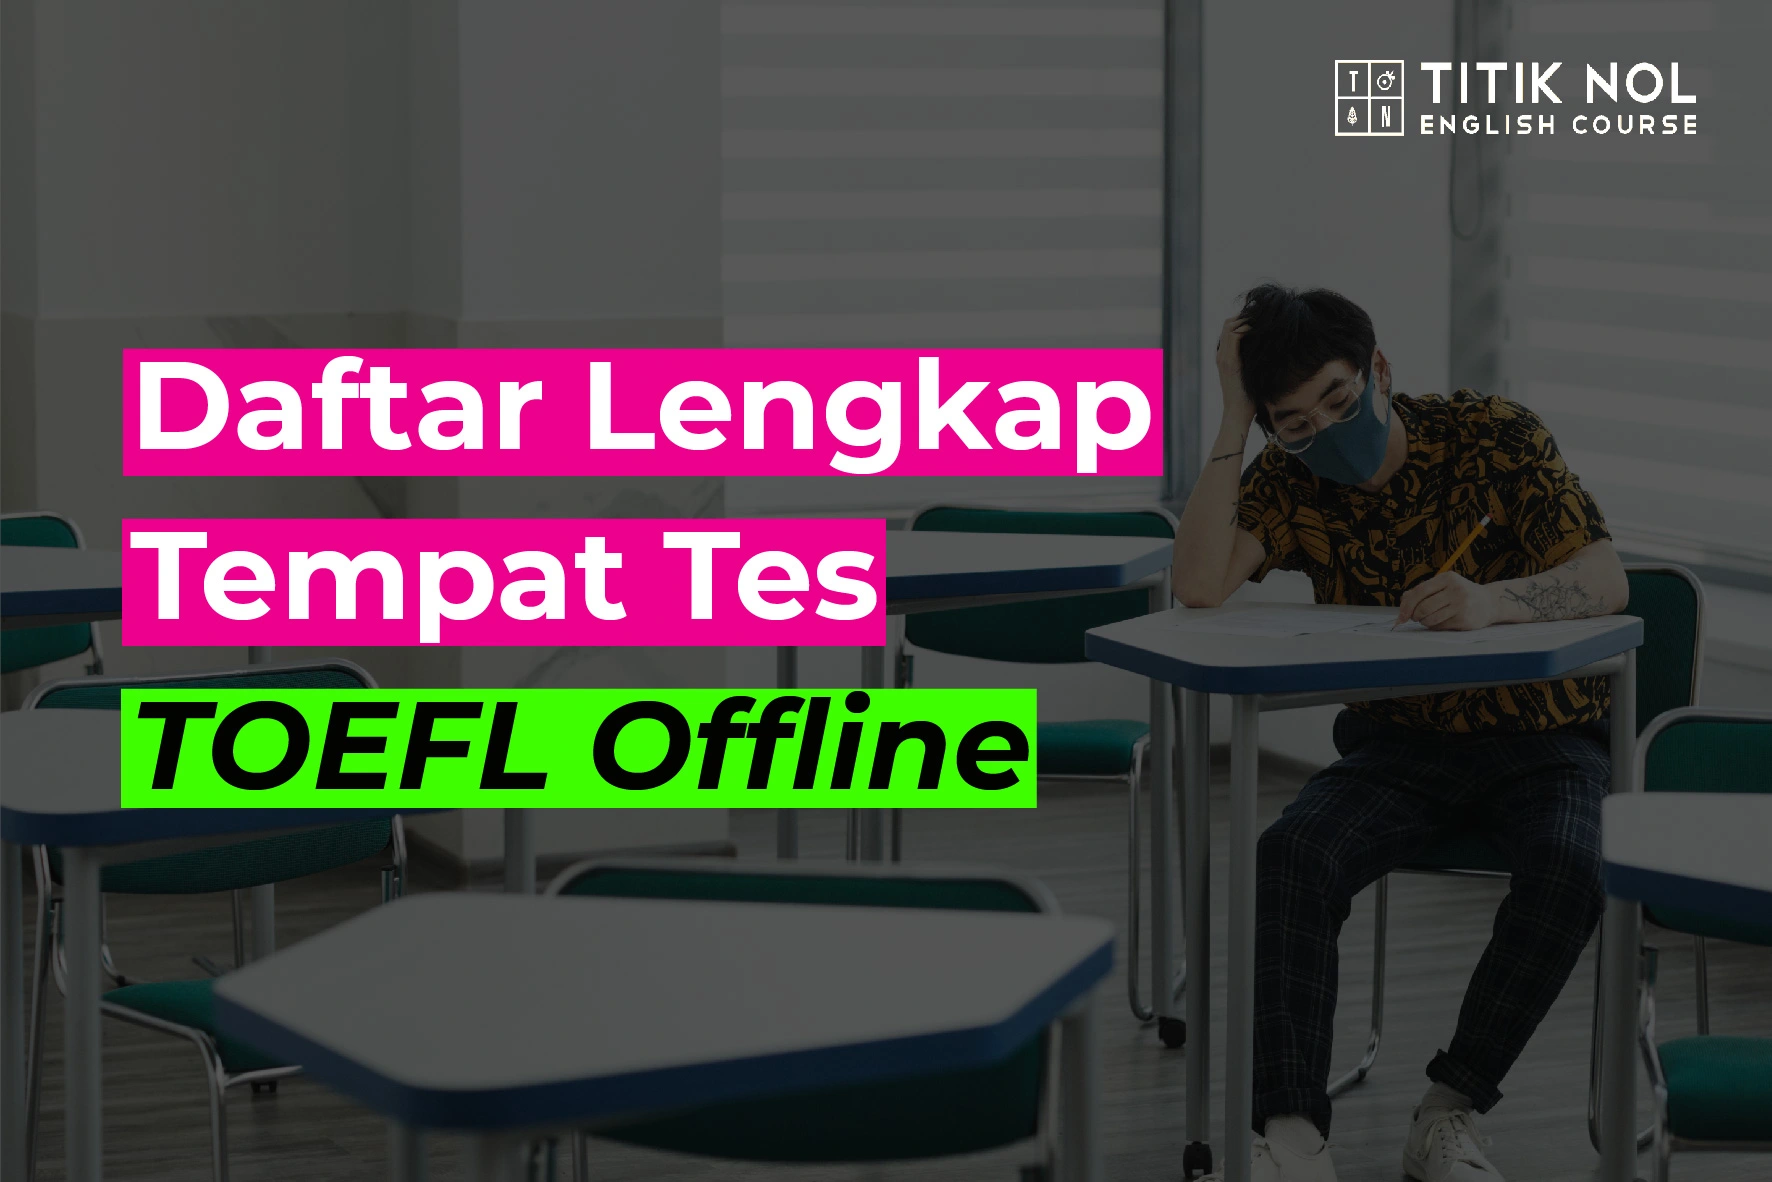 Daftar Lengkap Tempat Tes TOEFL Offline